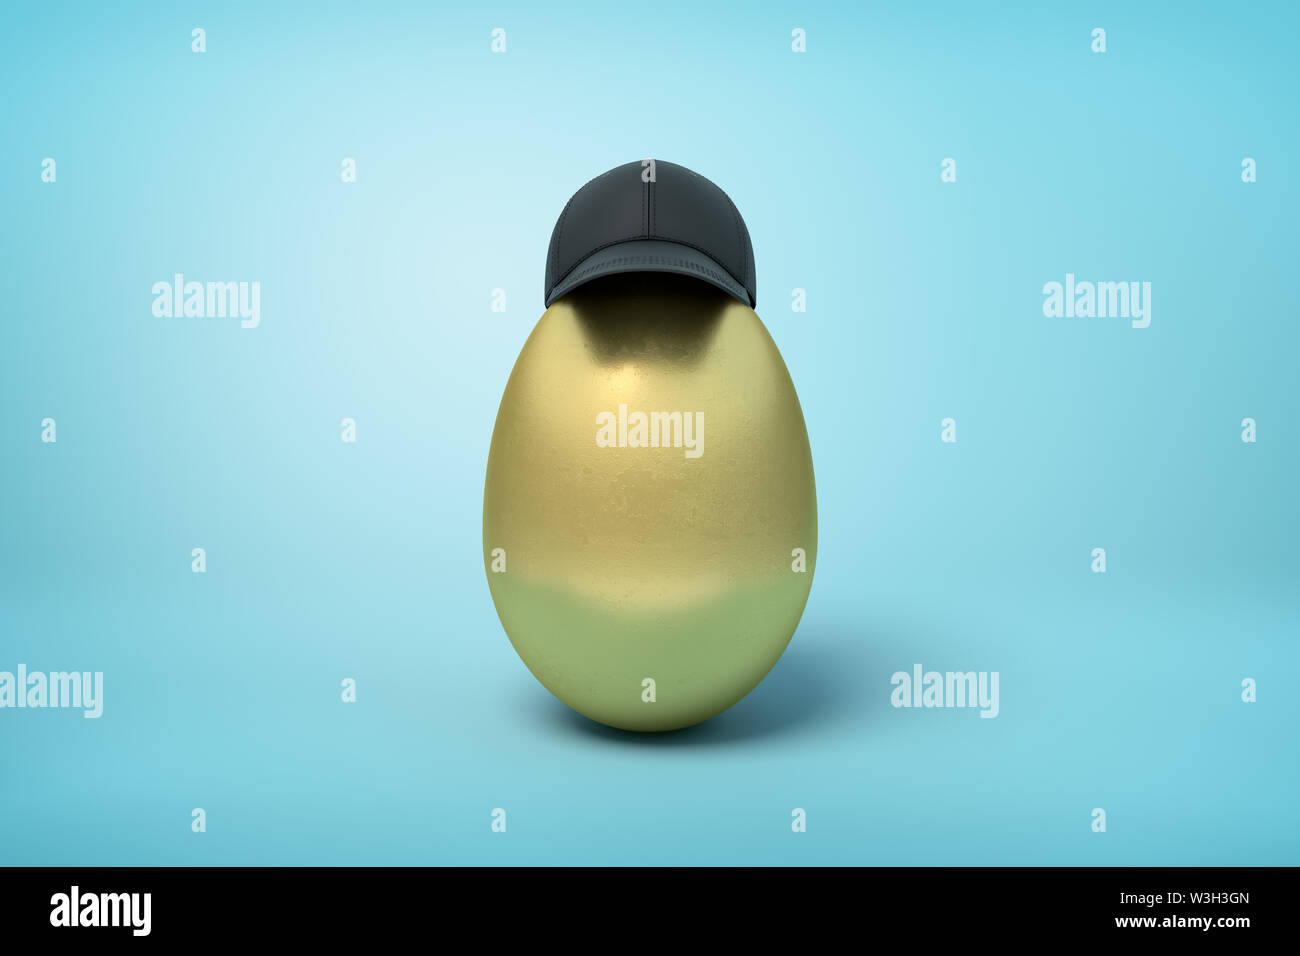 3d rendering of golden chicken egg wearing black baseball cap on light blue background. Stock Photo